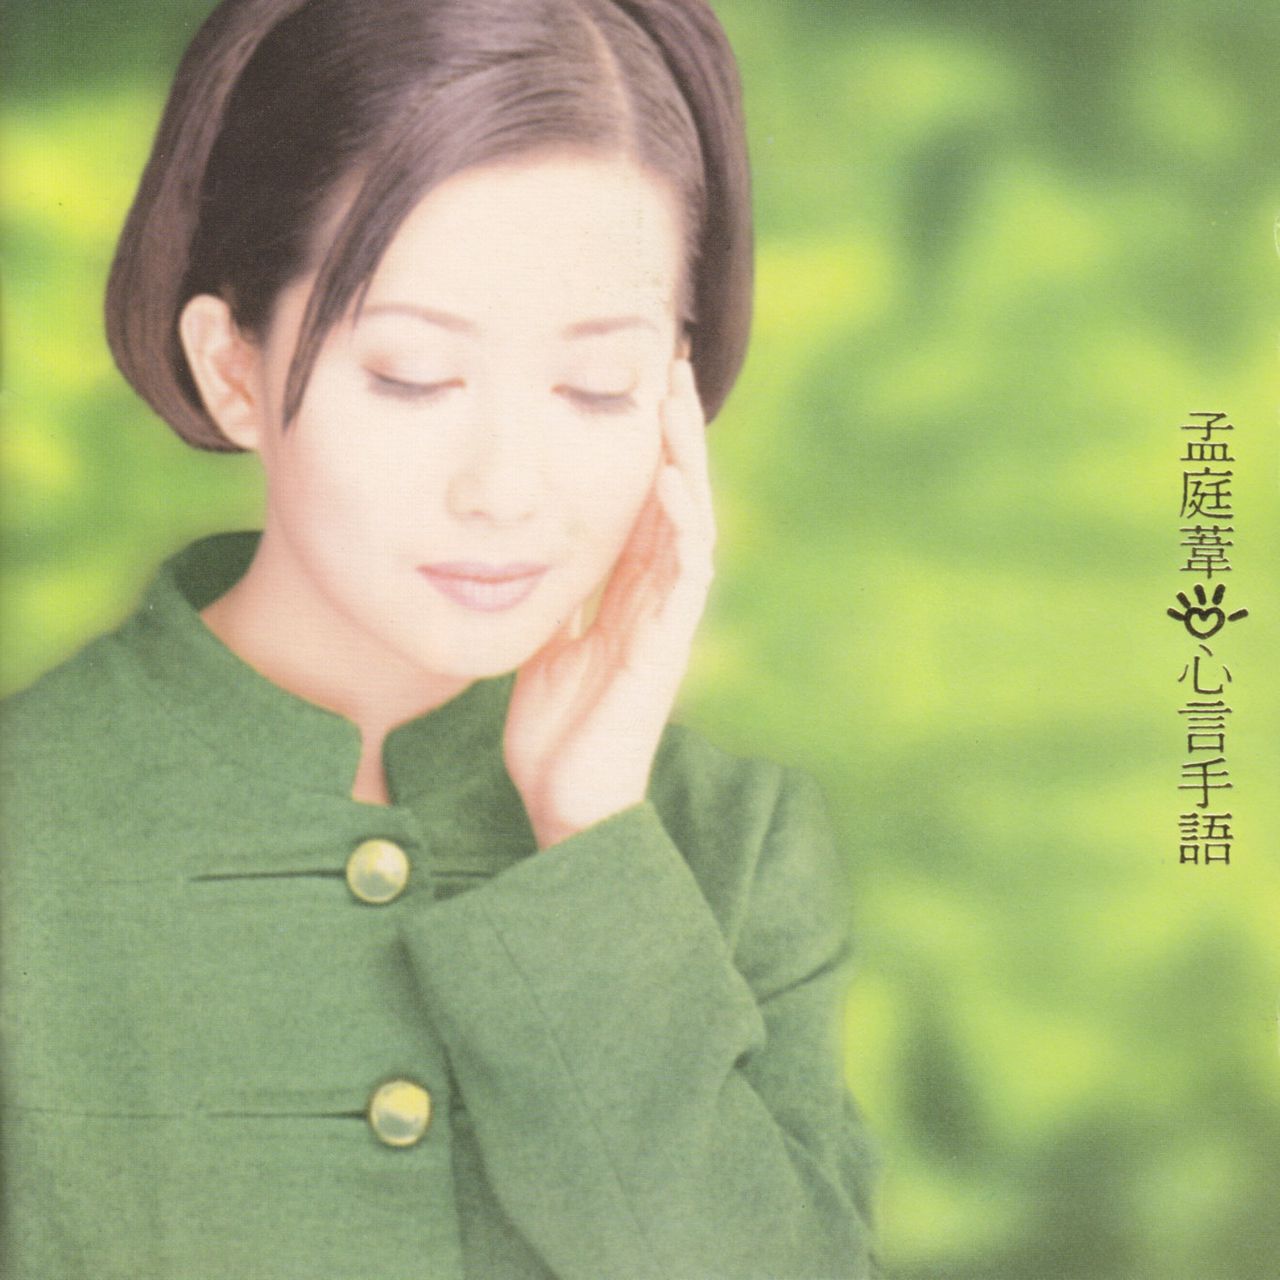 愛情海(孟庭葦1996年發行的原唱歌曲)